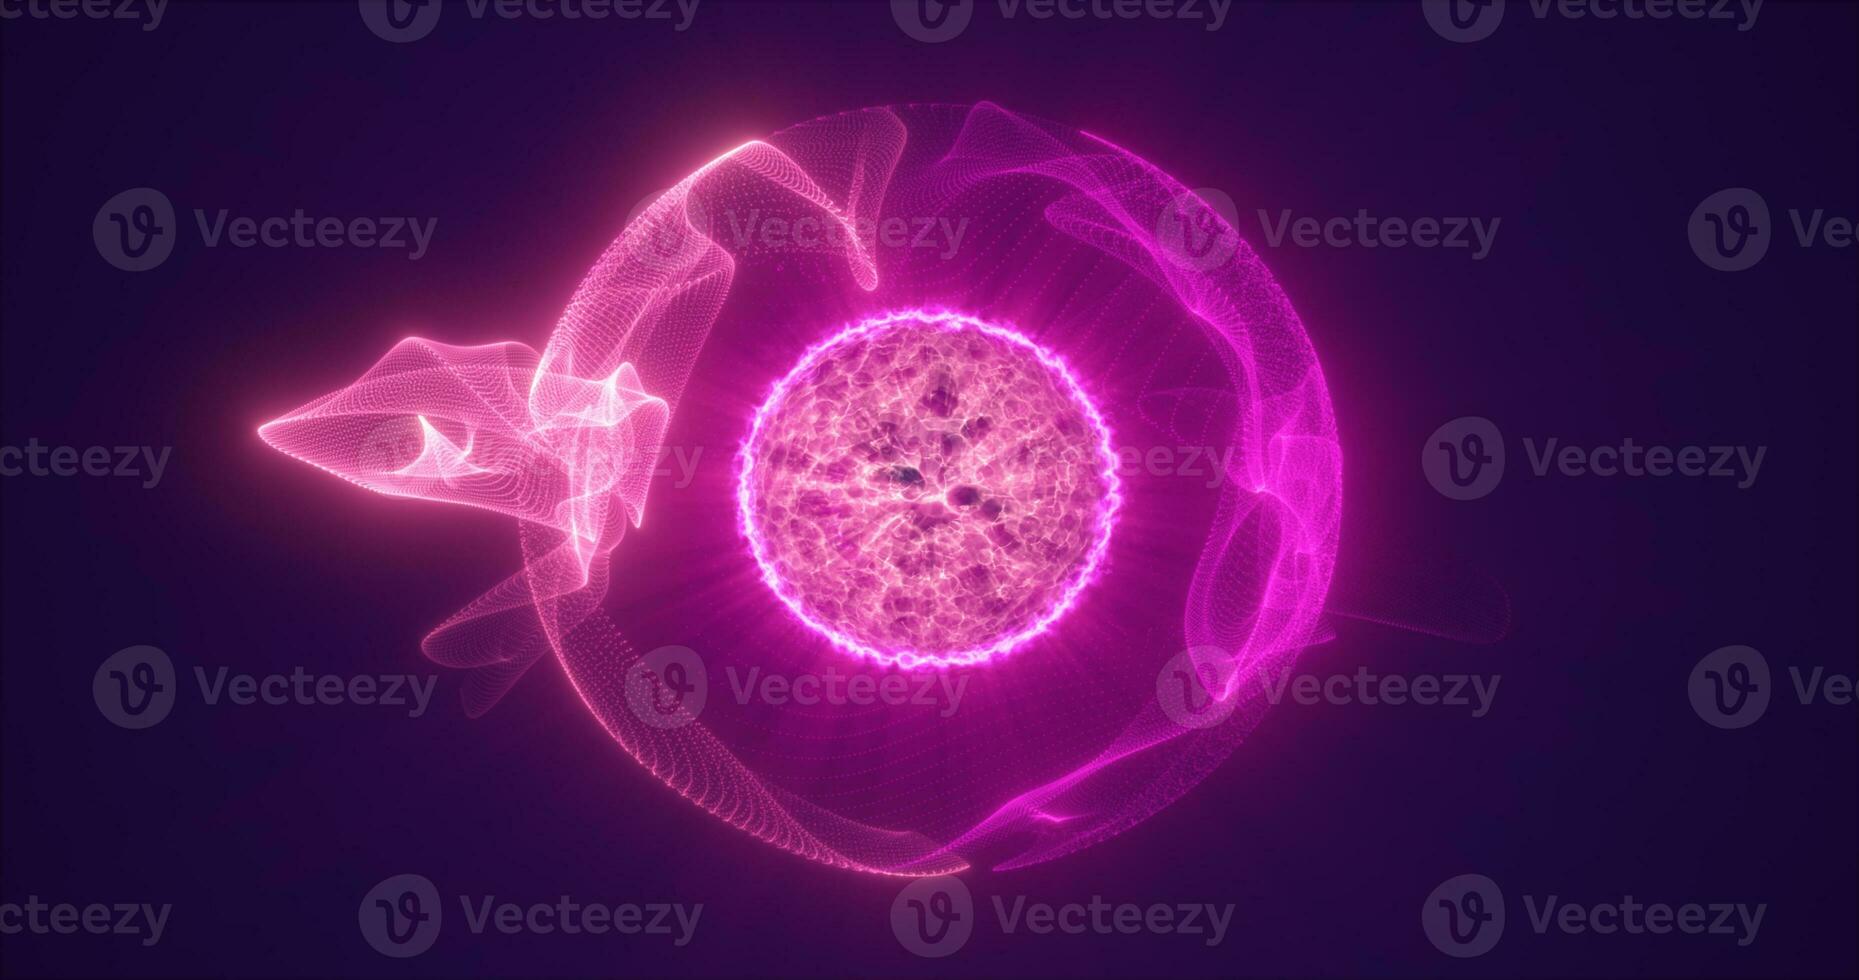 abstract Purper ronde gebied energie molecuul van futuristische high Tech gloeiend deeltjes foto